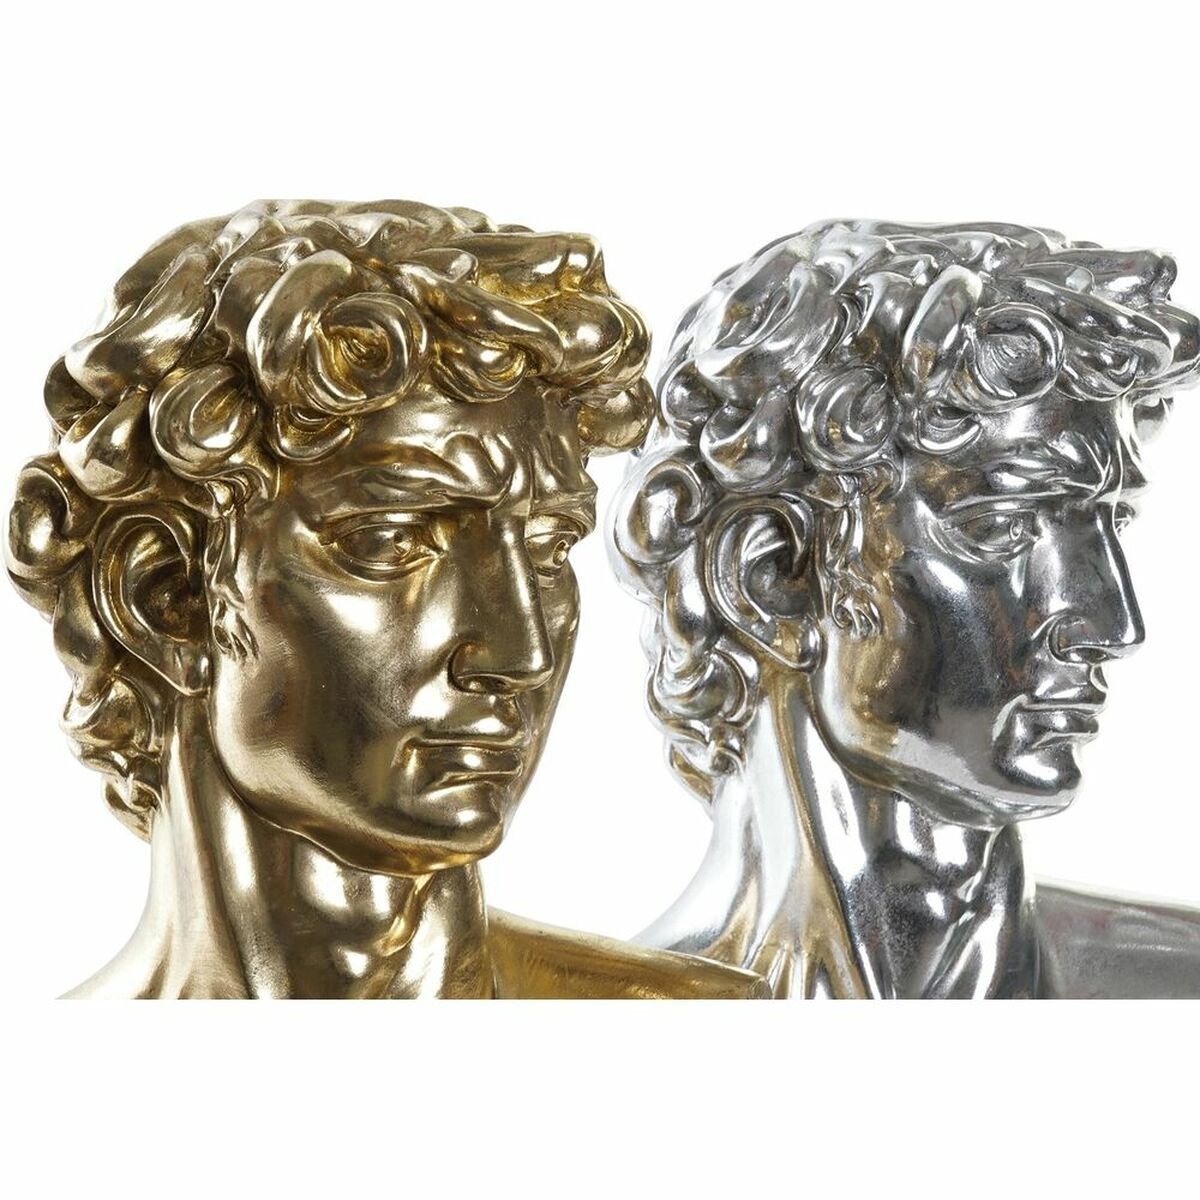 David silver och guld 24,5 x 17,5 x 36 cm